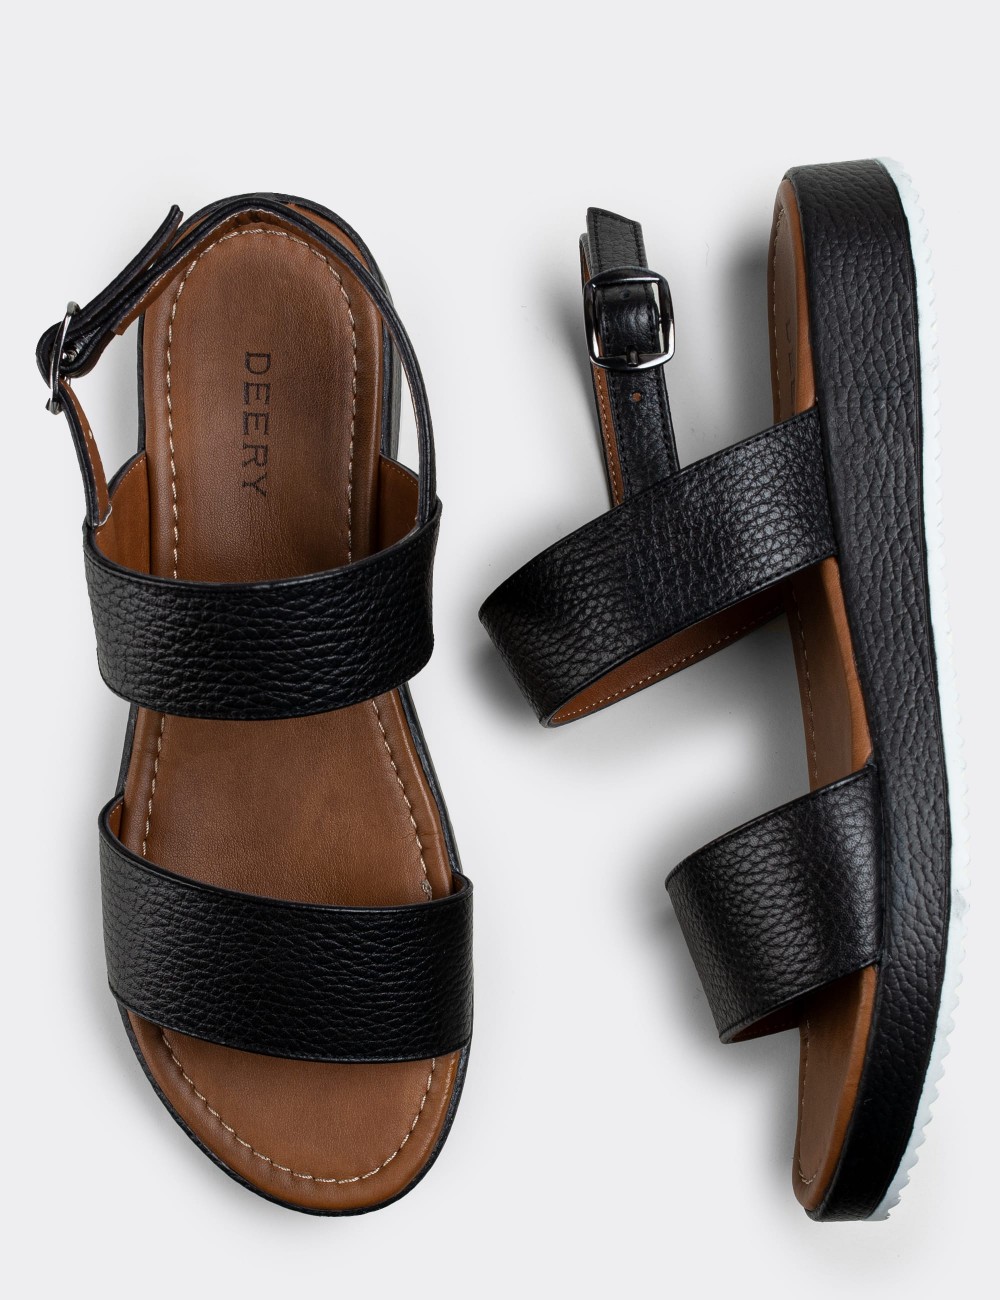 Black  Leather  Sandals - 02120ZSYHC03